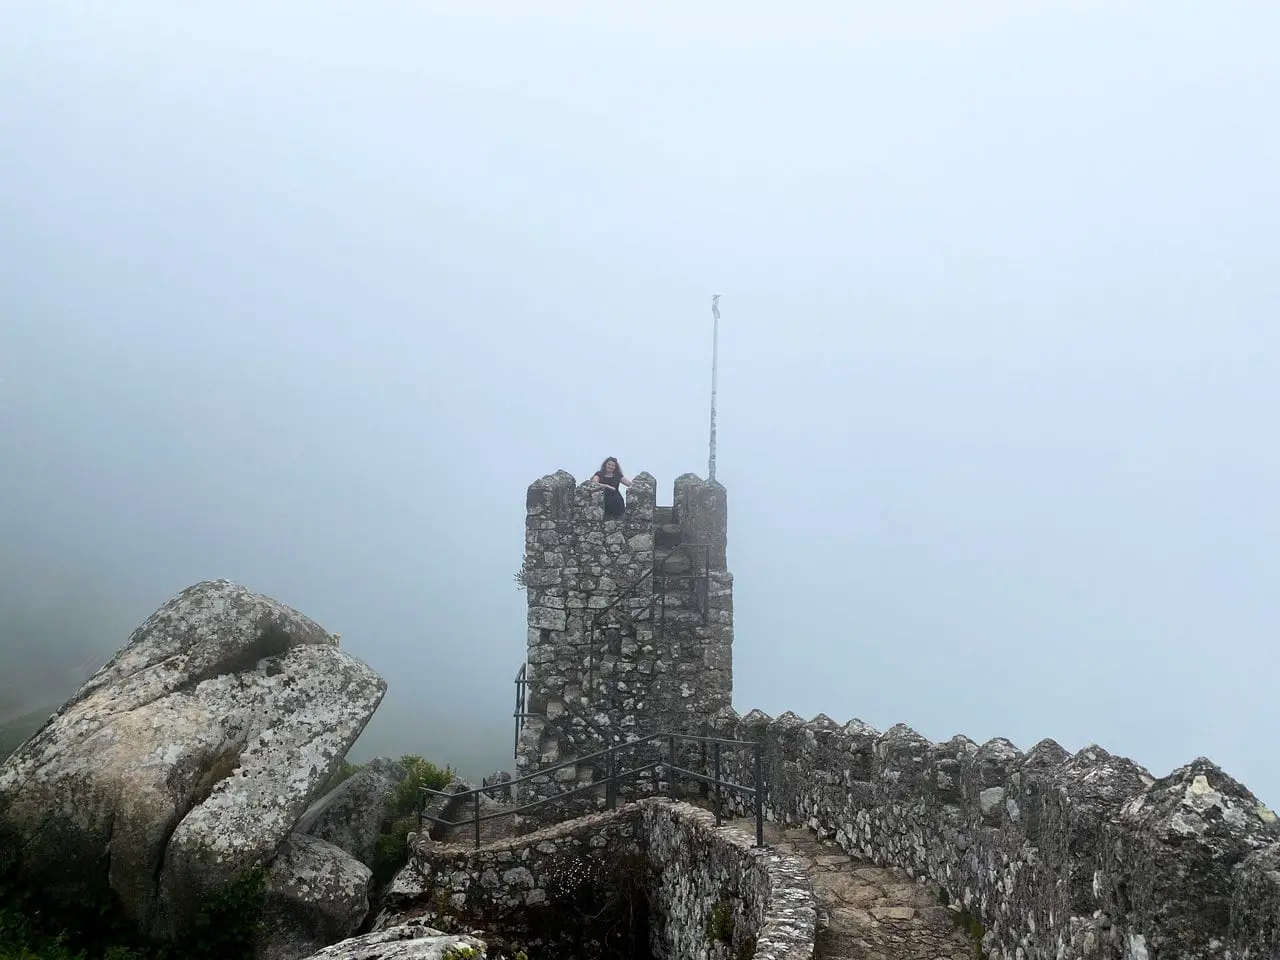 The Moorish Castle in Portugal